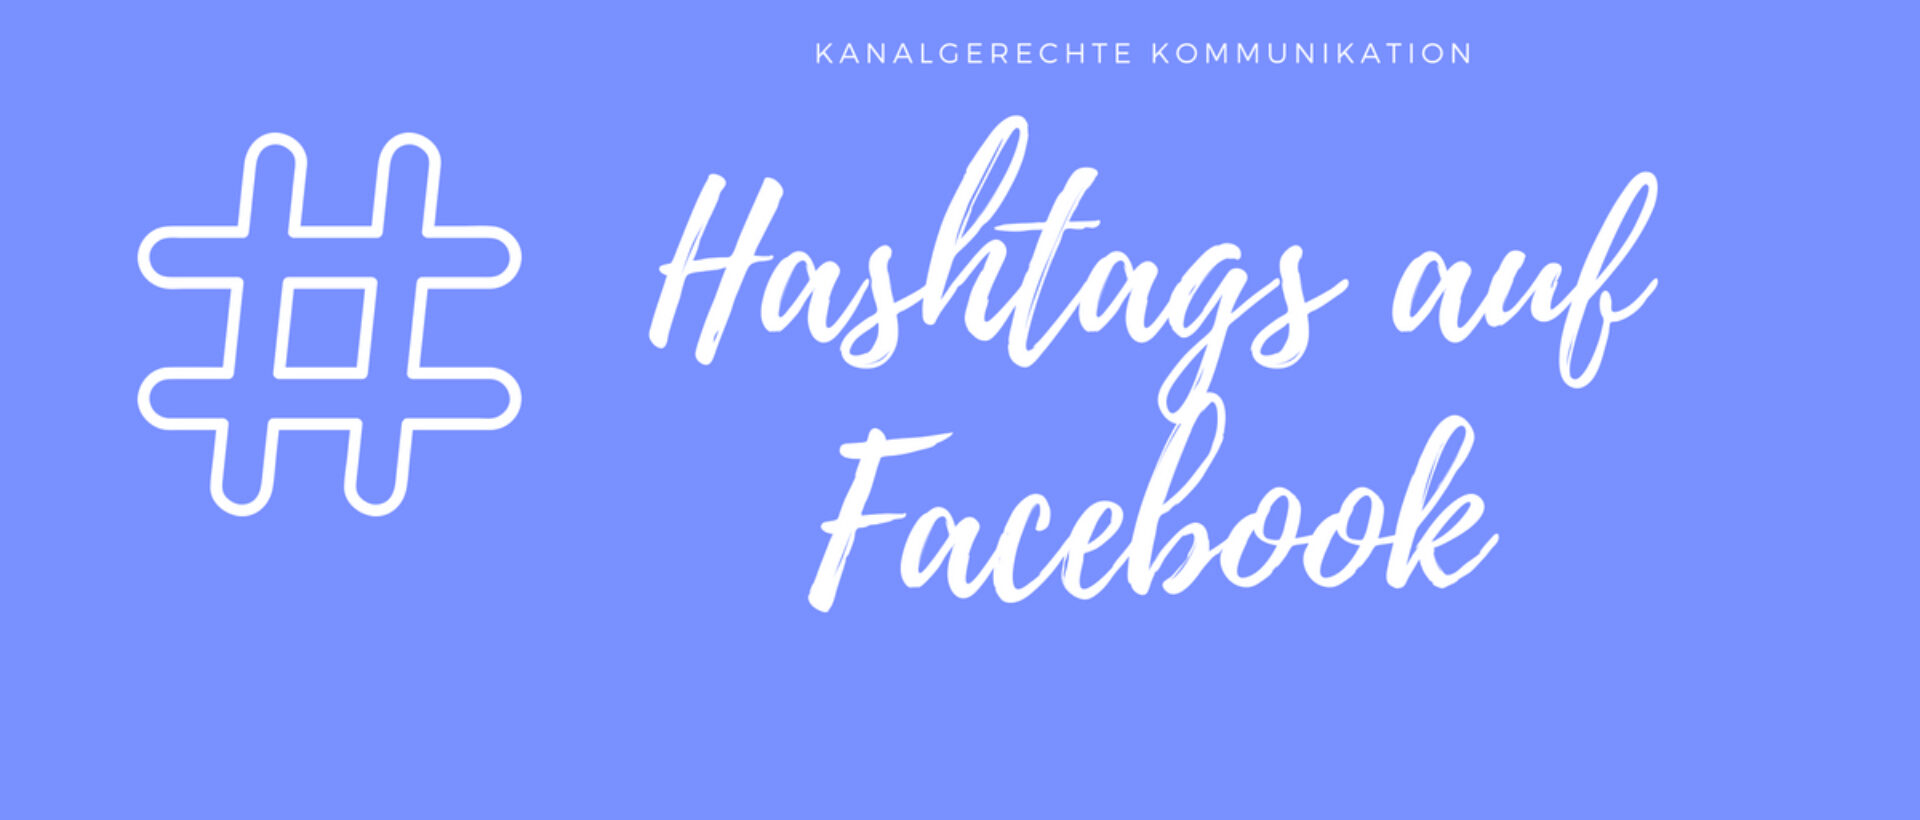 Kanalgerechte Kommunikation: Hashtags auf Facebook